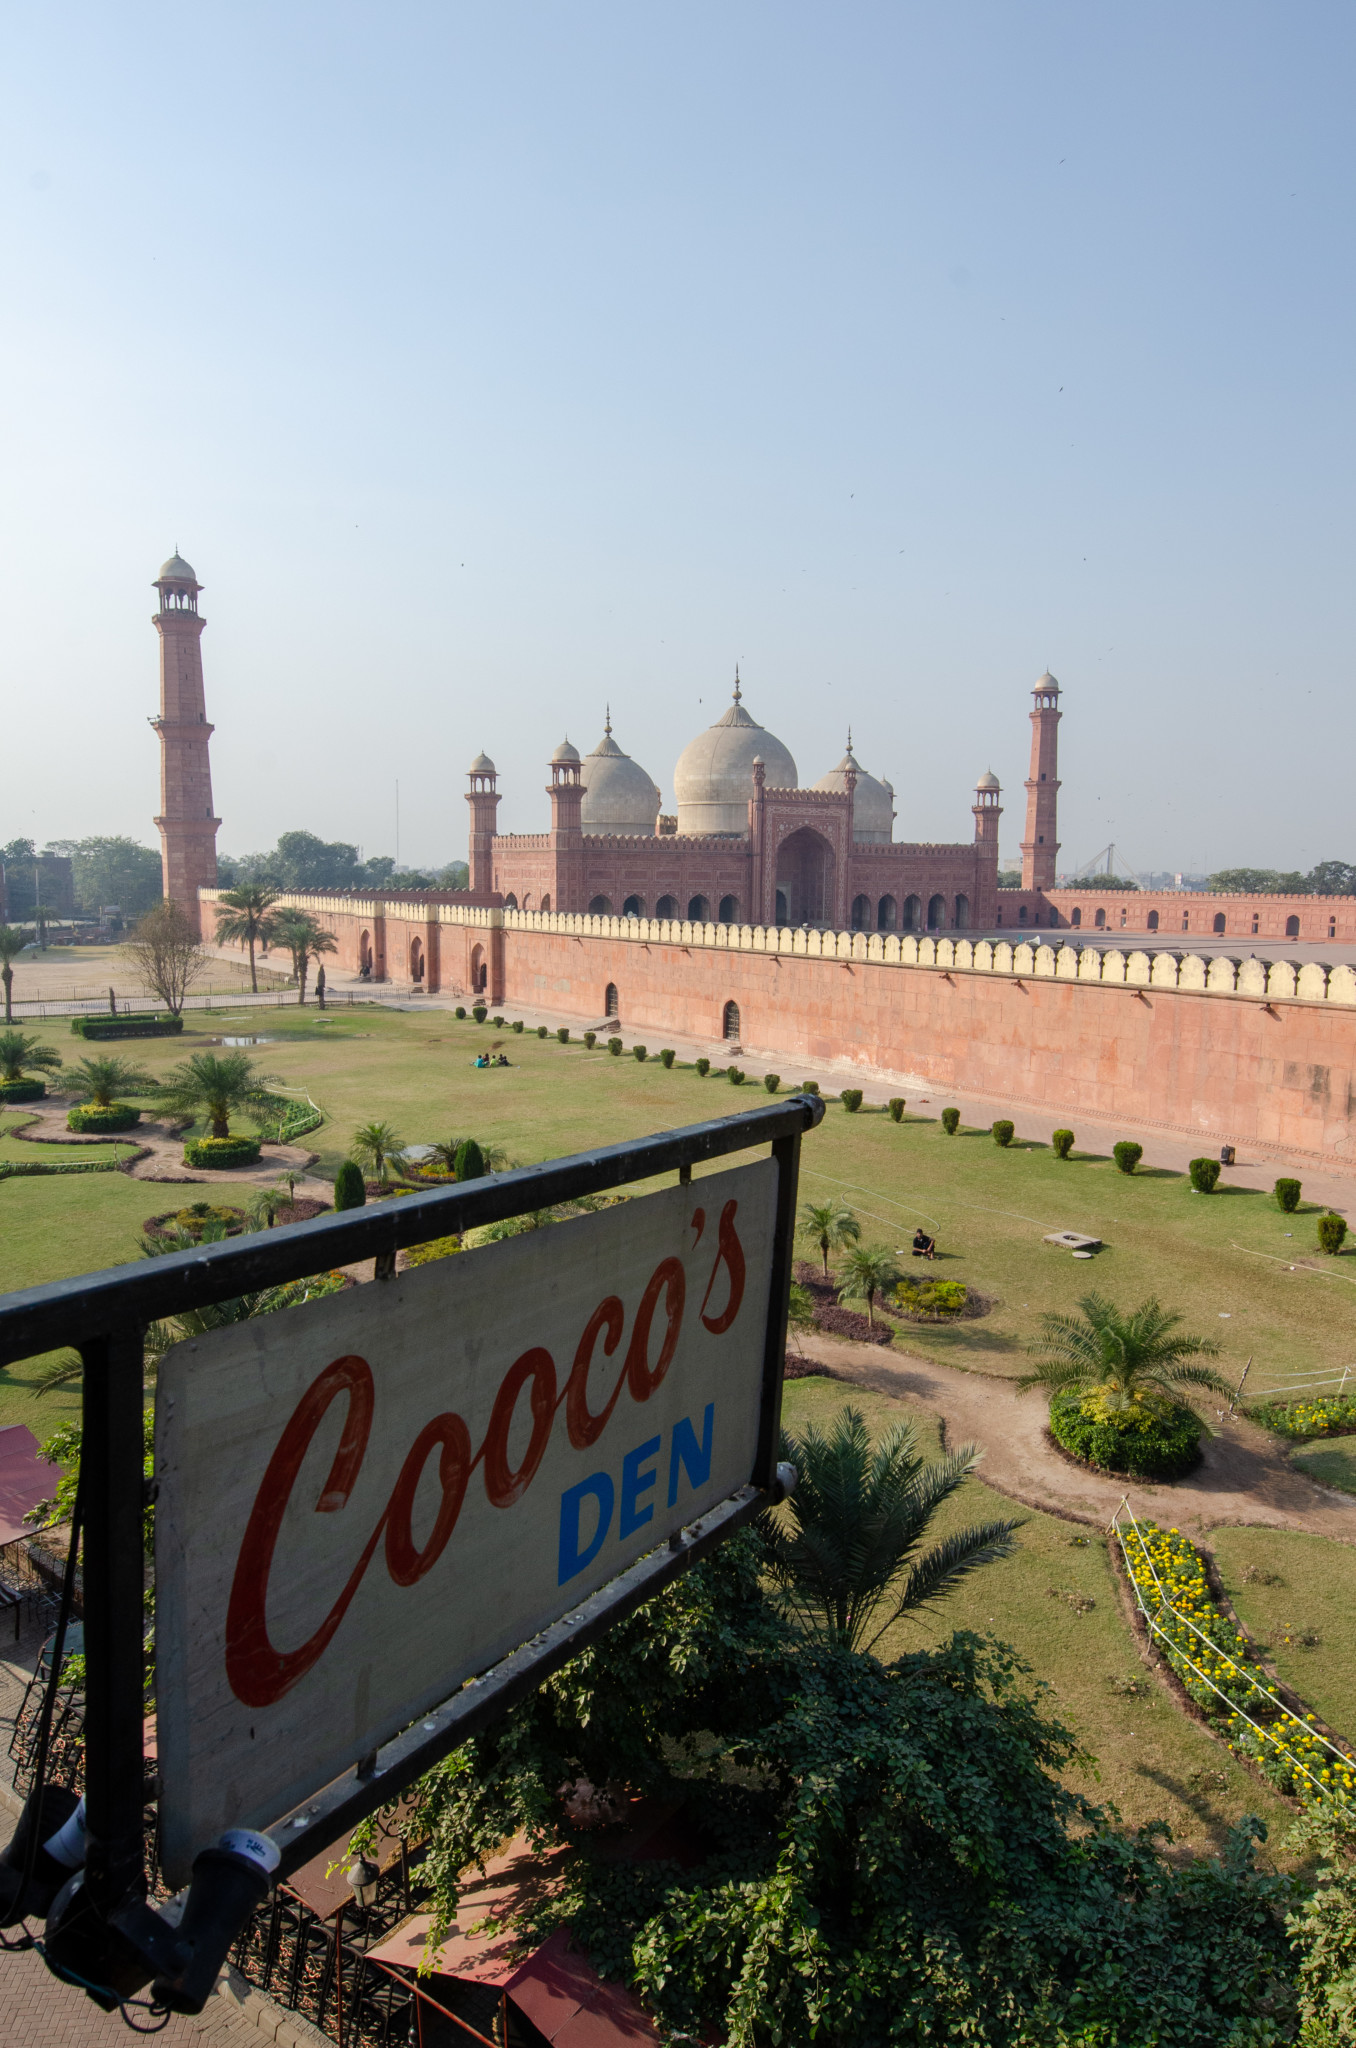 Cooco's Den Restaurant in Lahore Tipp